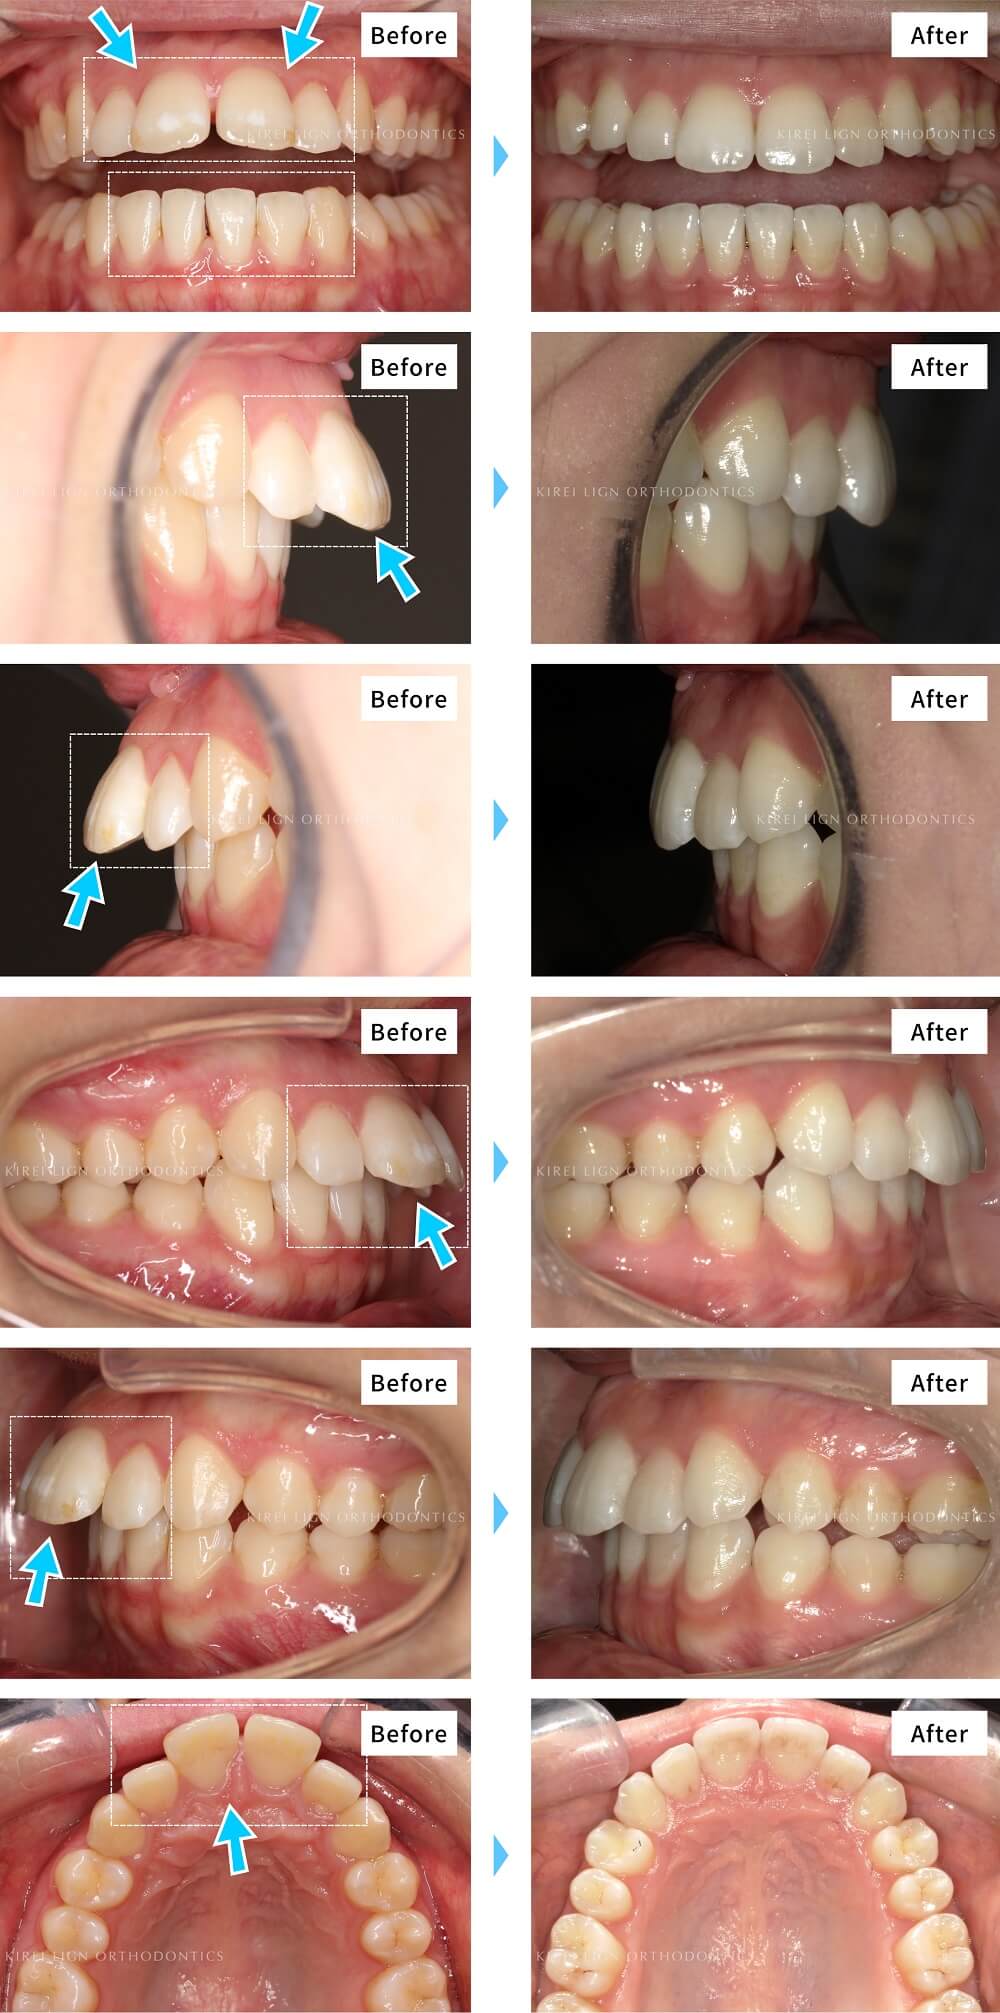 歯列矯正の費用 約10万円 35万円 税別 でどのくらい歯並びがきれいになる キレイラインの症例写真で検証 キレイライン矯正